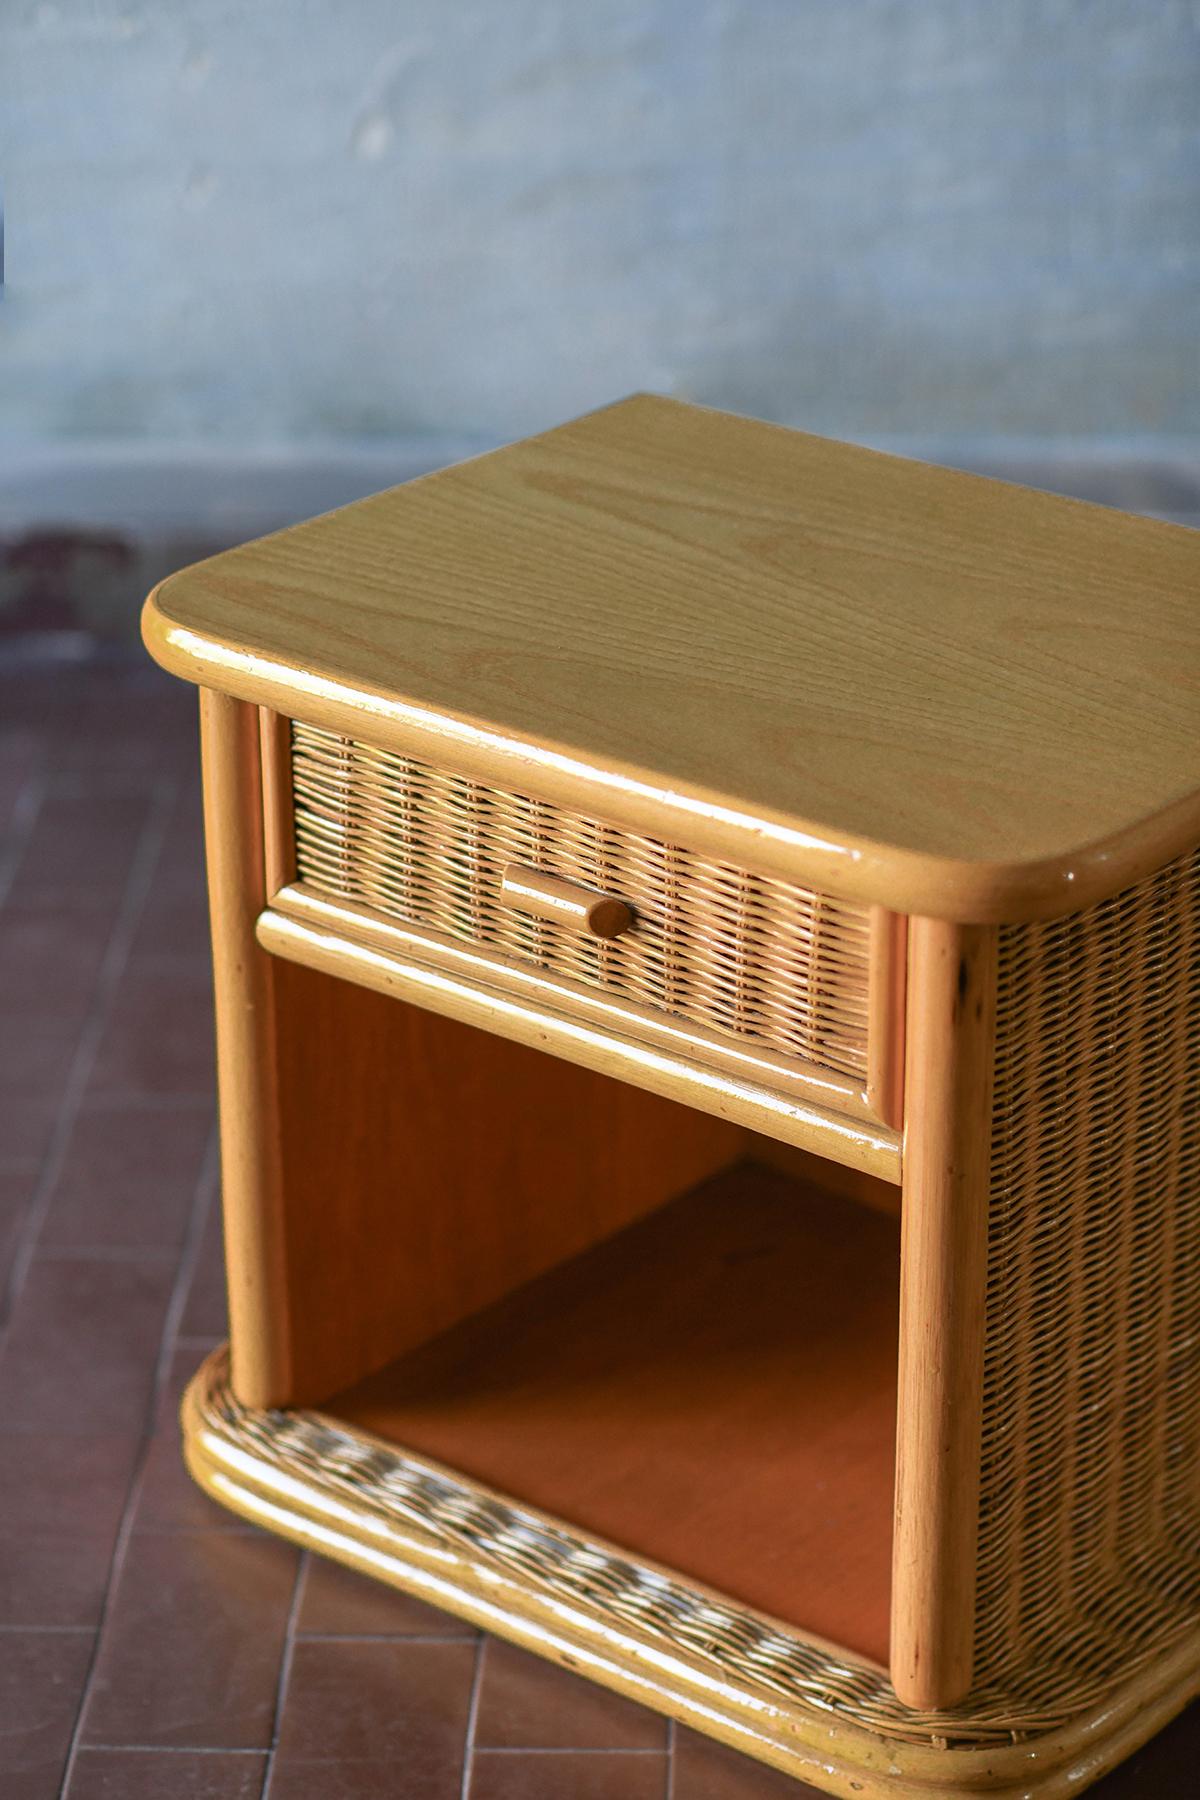 Paire de tables de chevet en bois et osier avec tiroir, Italie 1980.
Détails du produit
Dimensions : 57 L x 51 H x 44 D cm